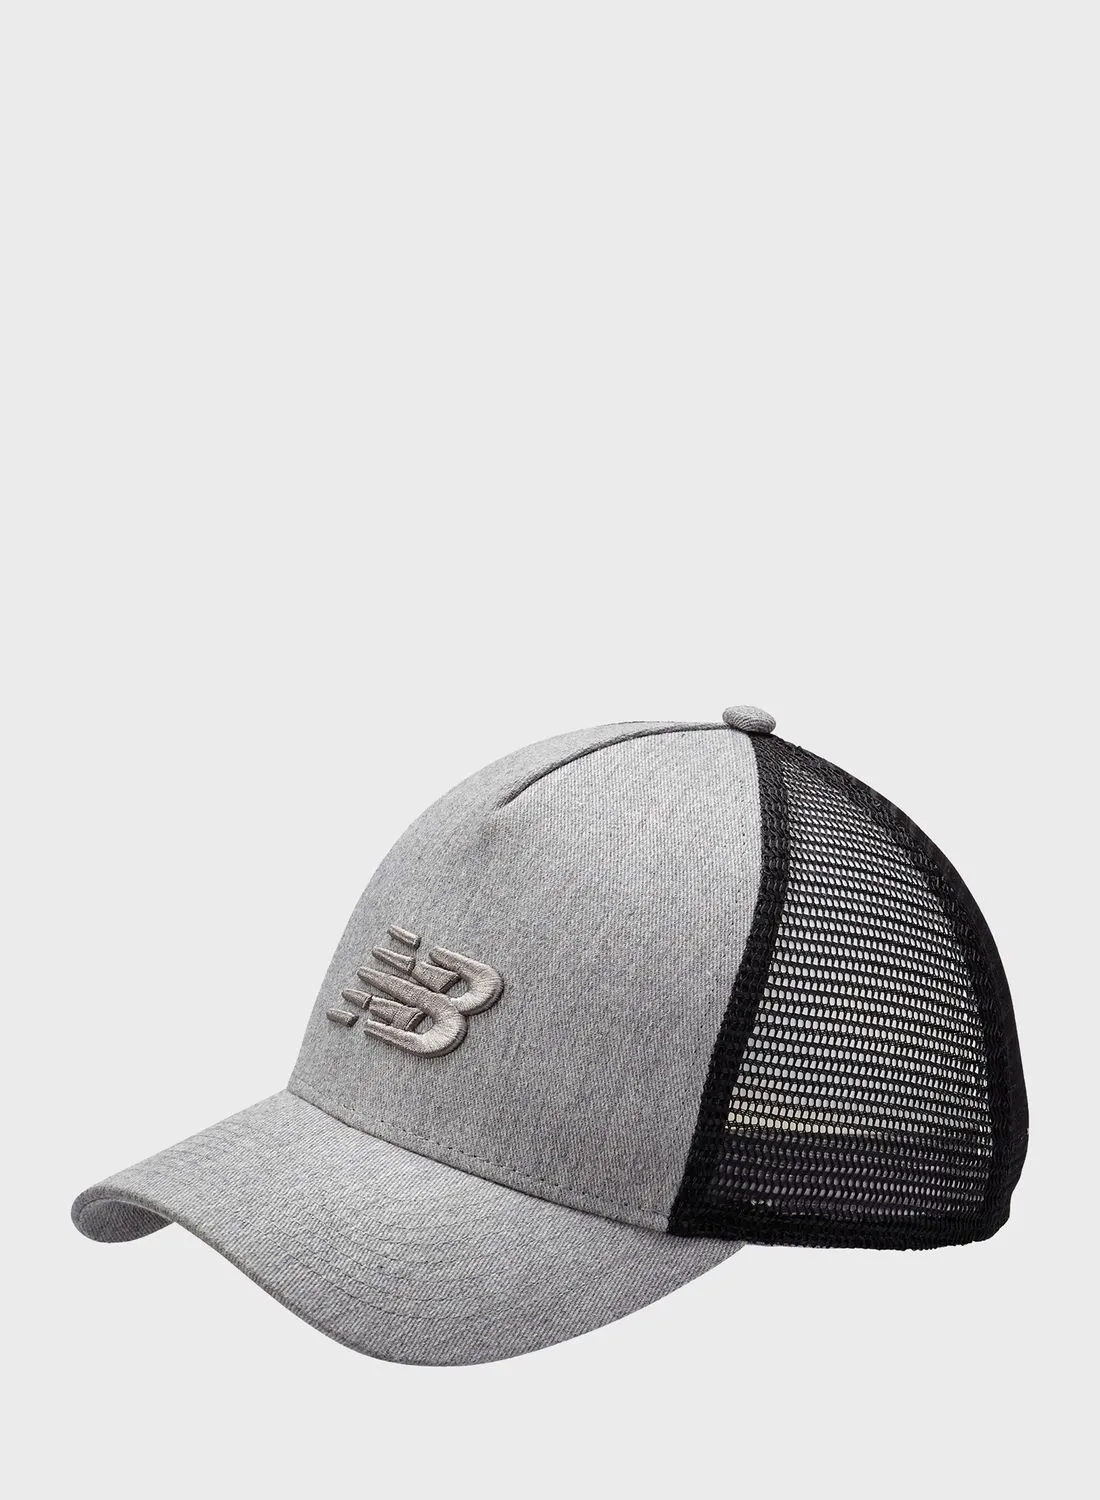 New Balance Sport Essentials Trucker Hat